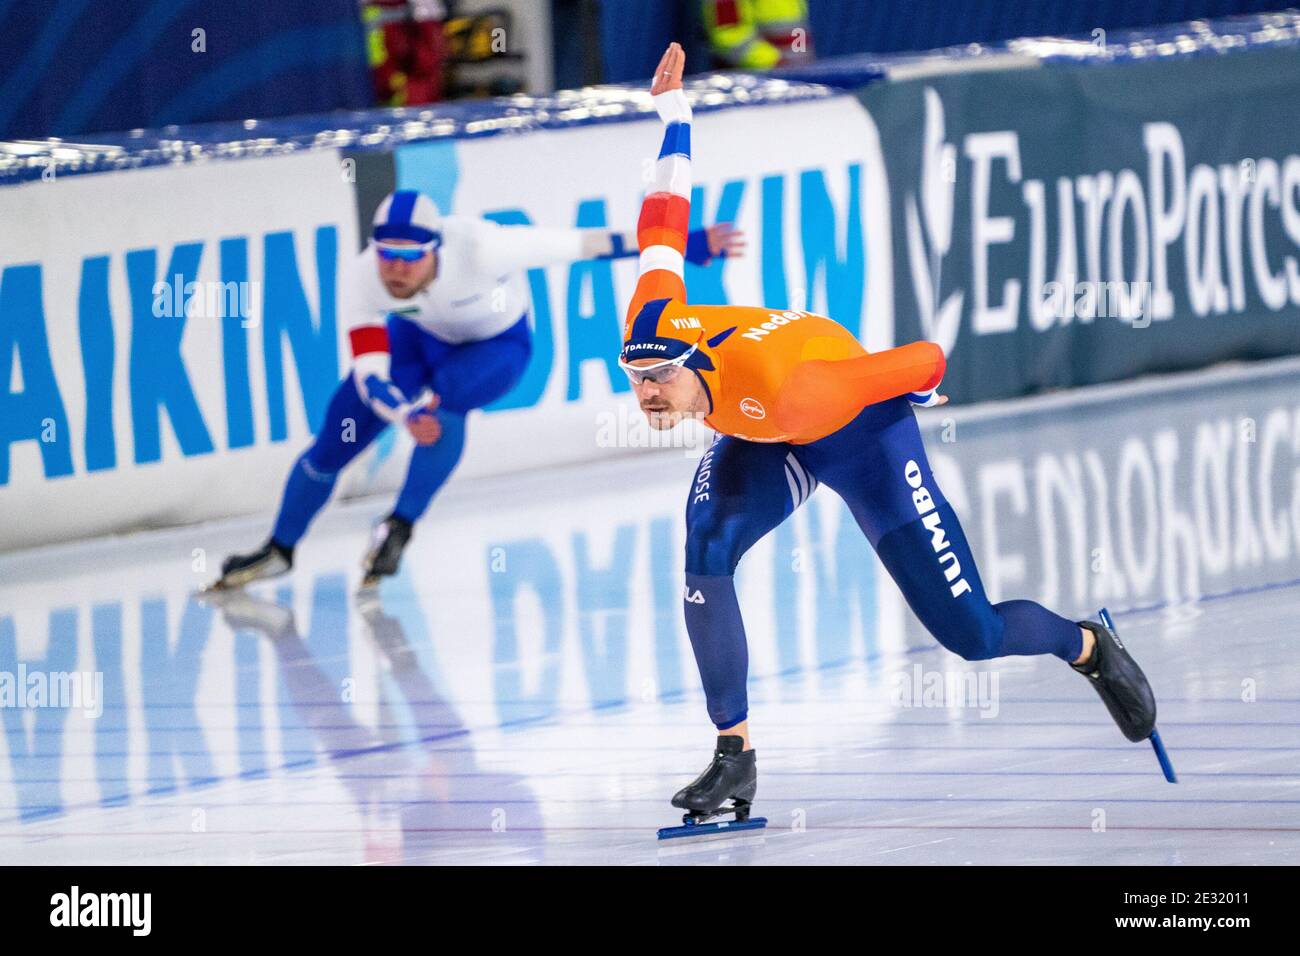 HEERENVEEN, PAYS-BAS - JANVIER 16: Samuli Suomalainen de Finlande, hein Otterspeer des pays-Bas pendant le championnat d'Europe Allround Banque D'Images